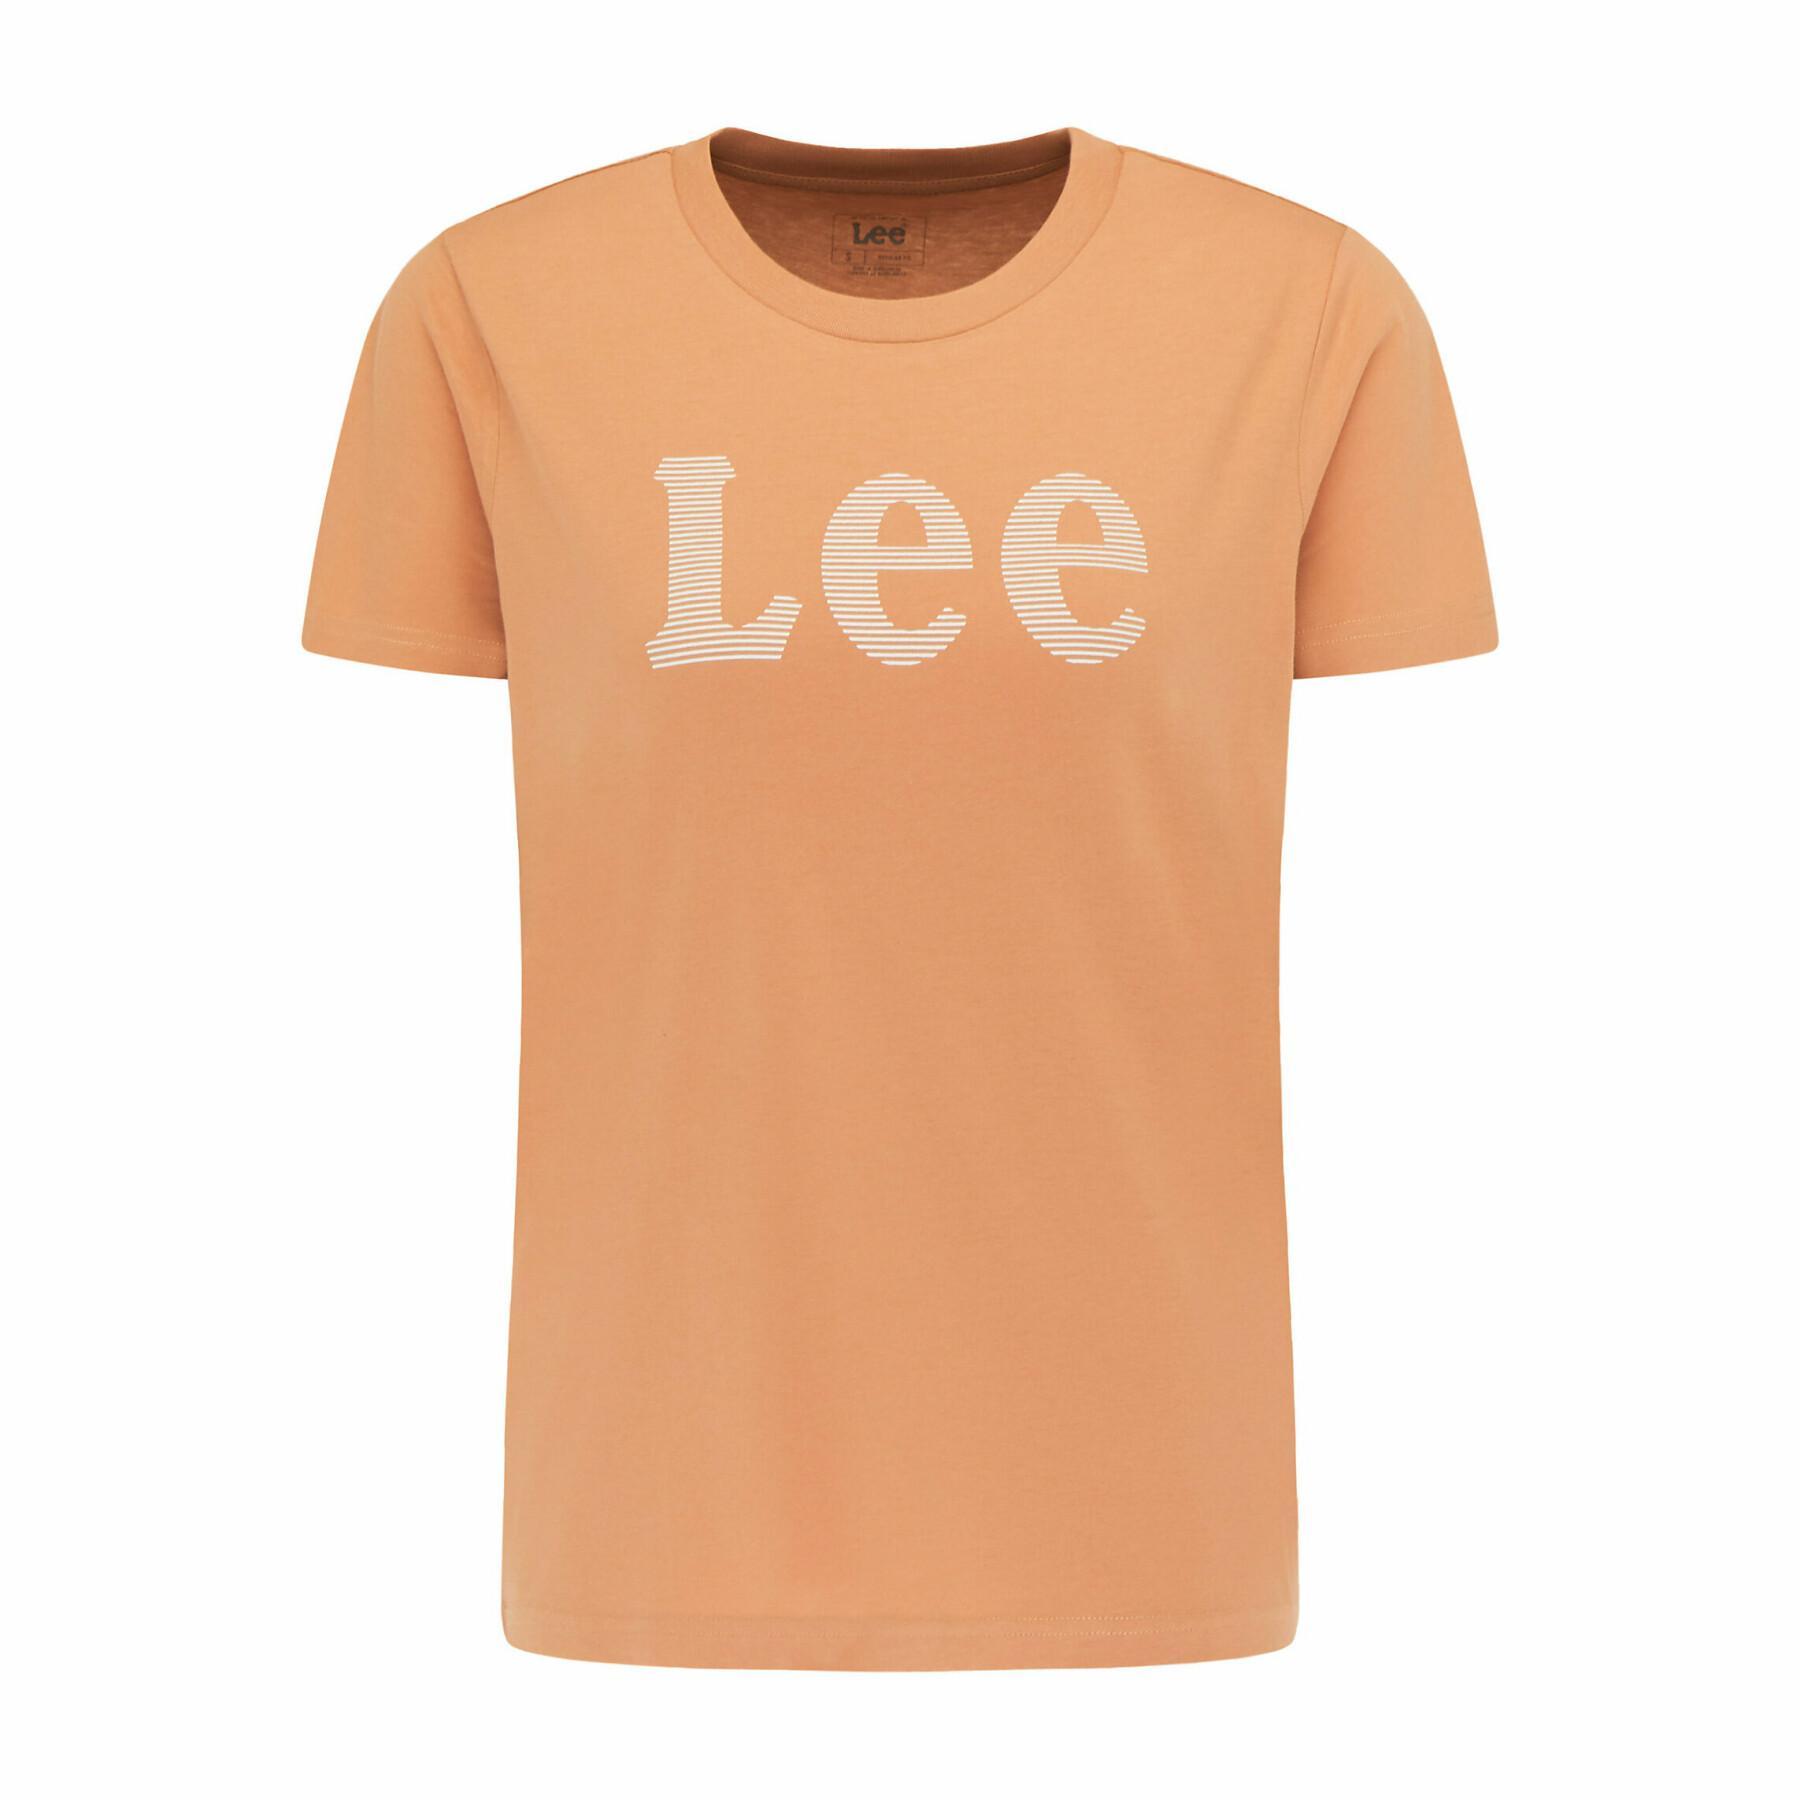 Maglietta da donna Lee